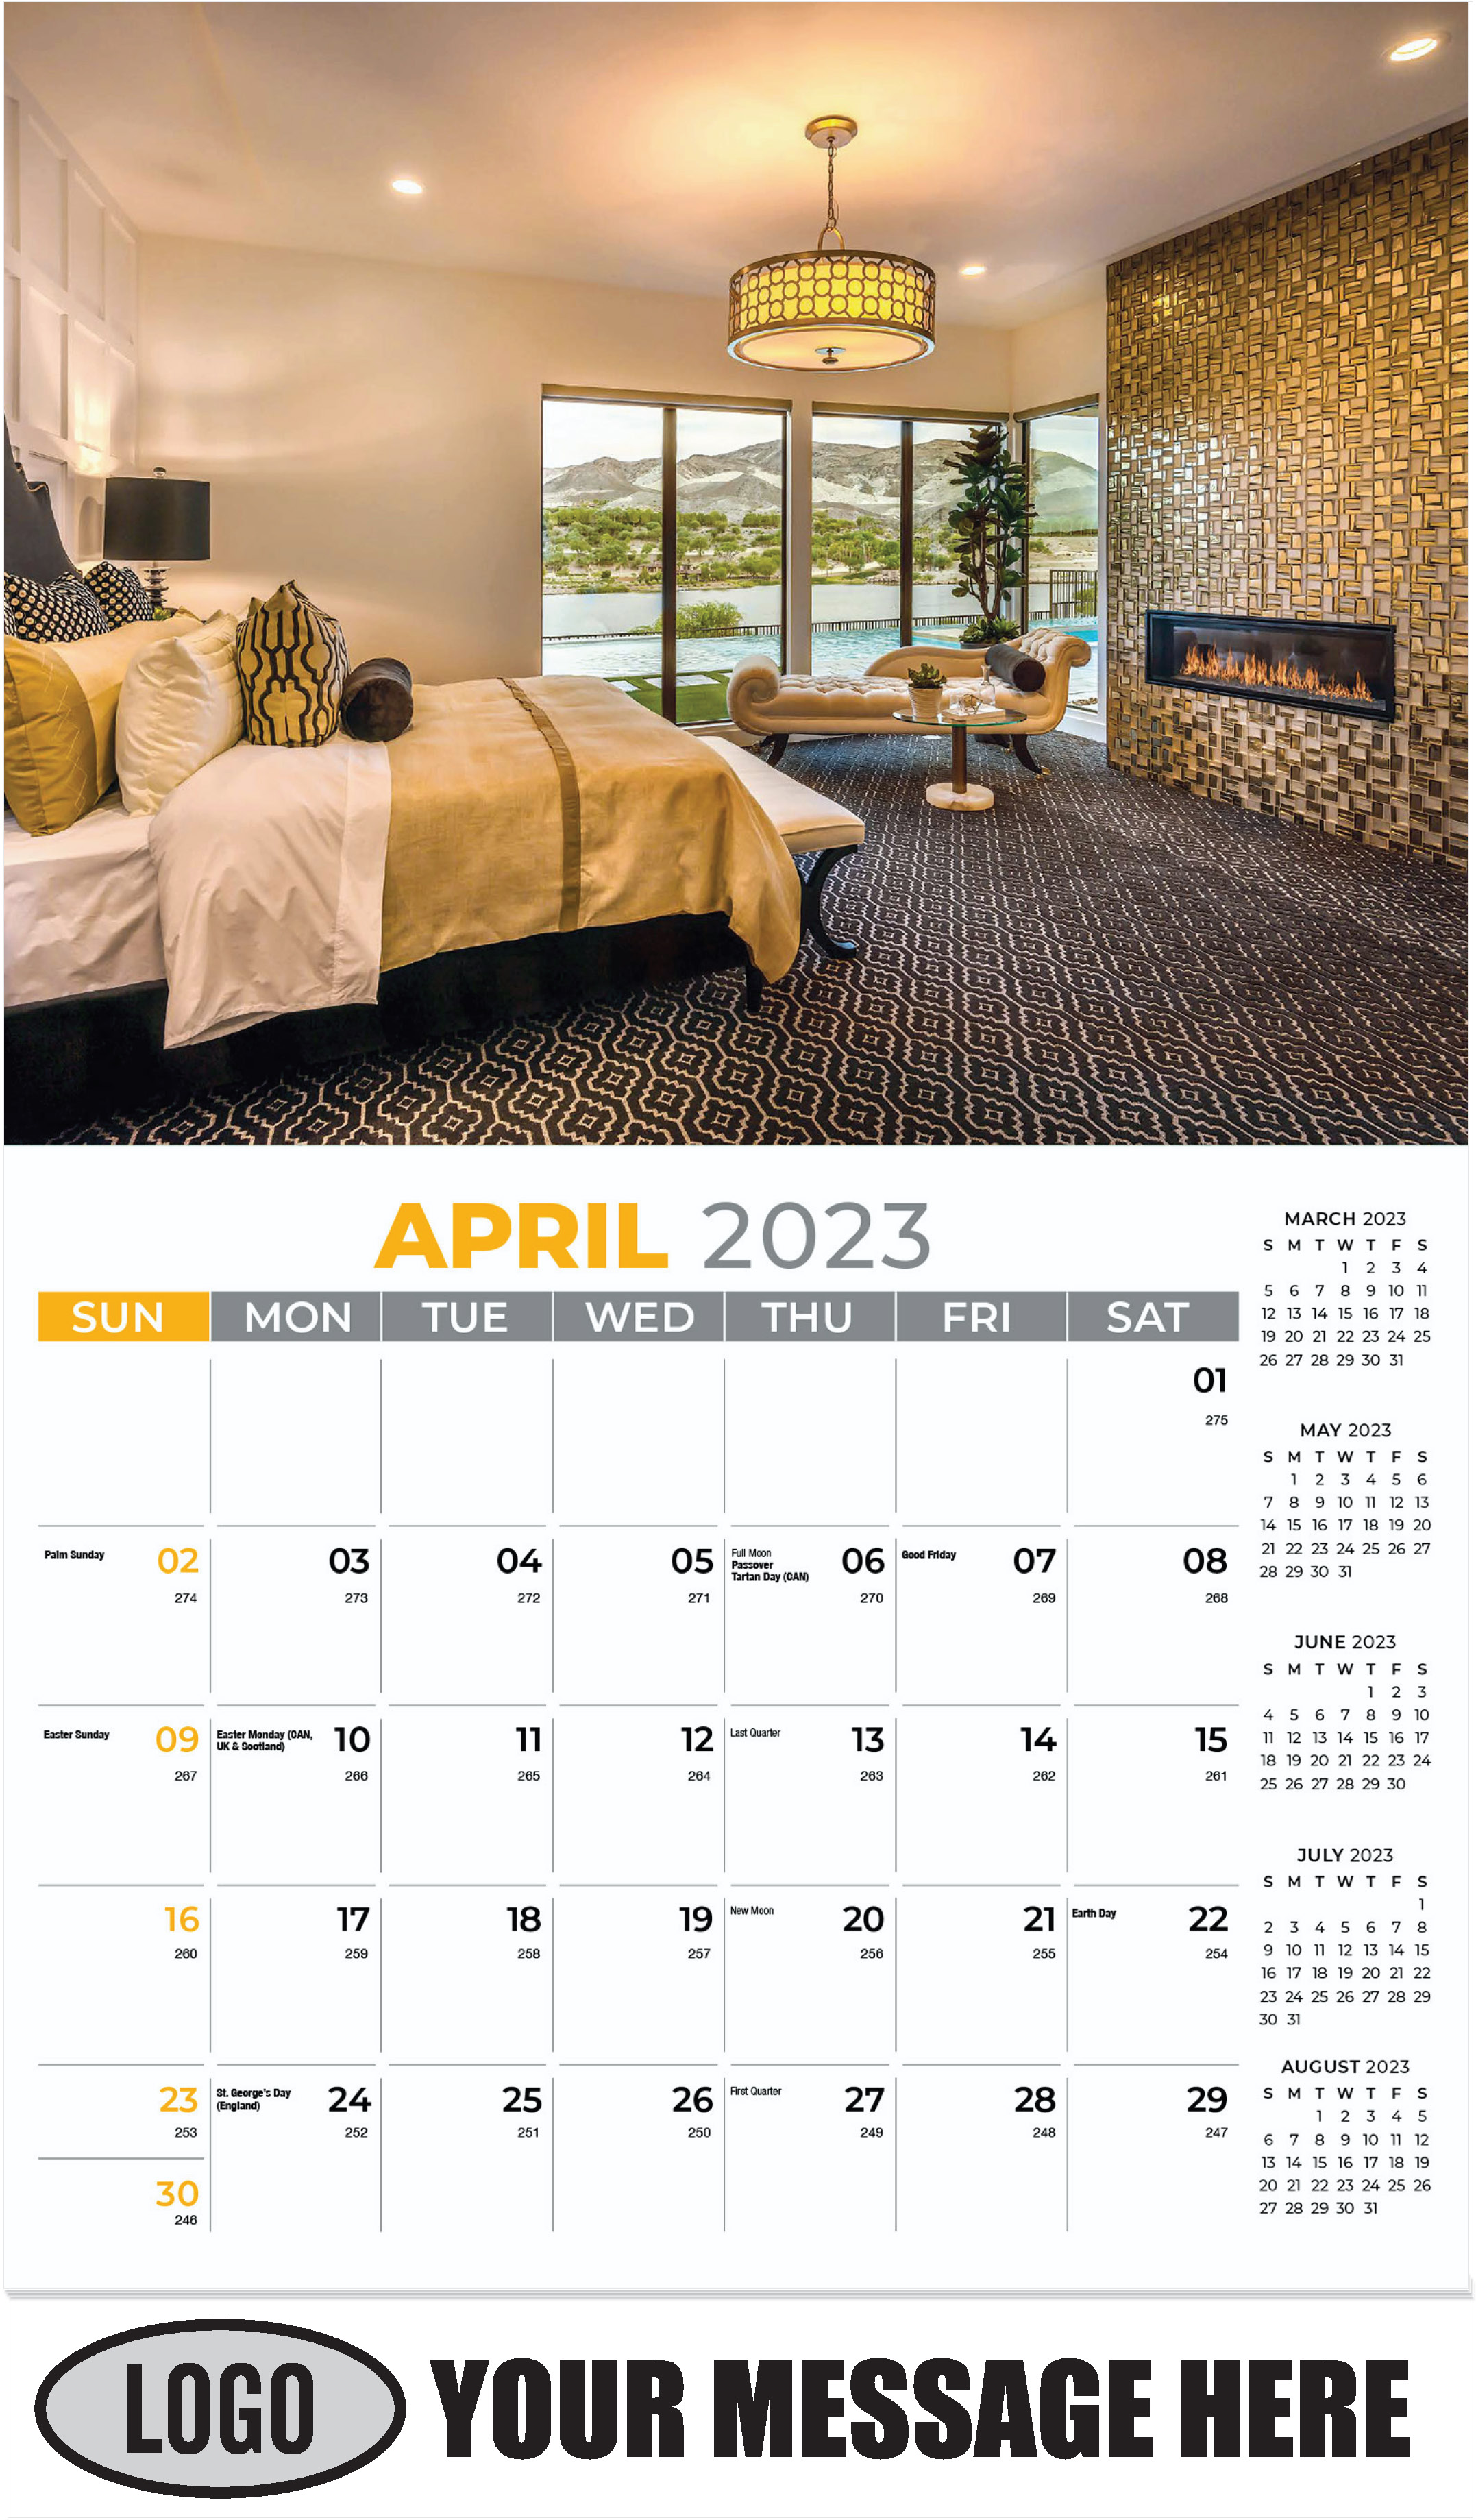 April - Décor & Design 2023 Promotional Calendar